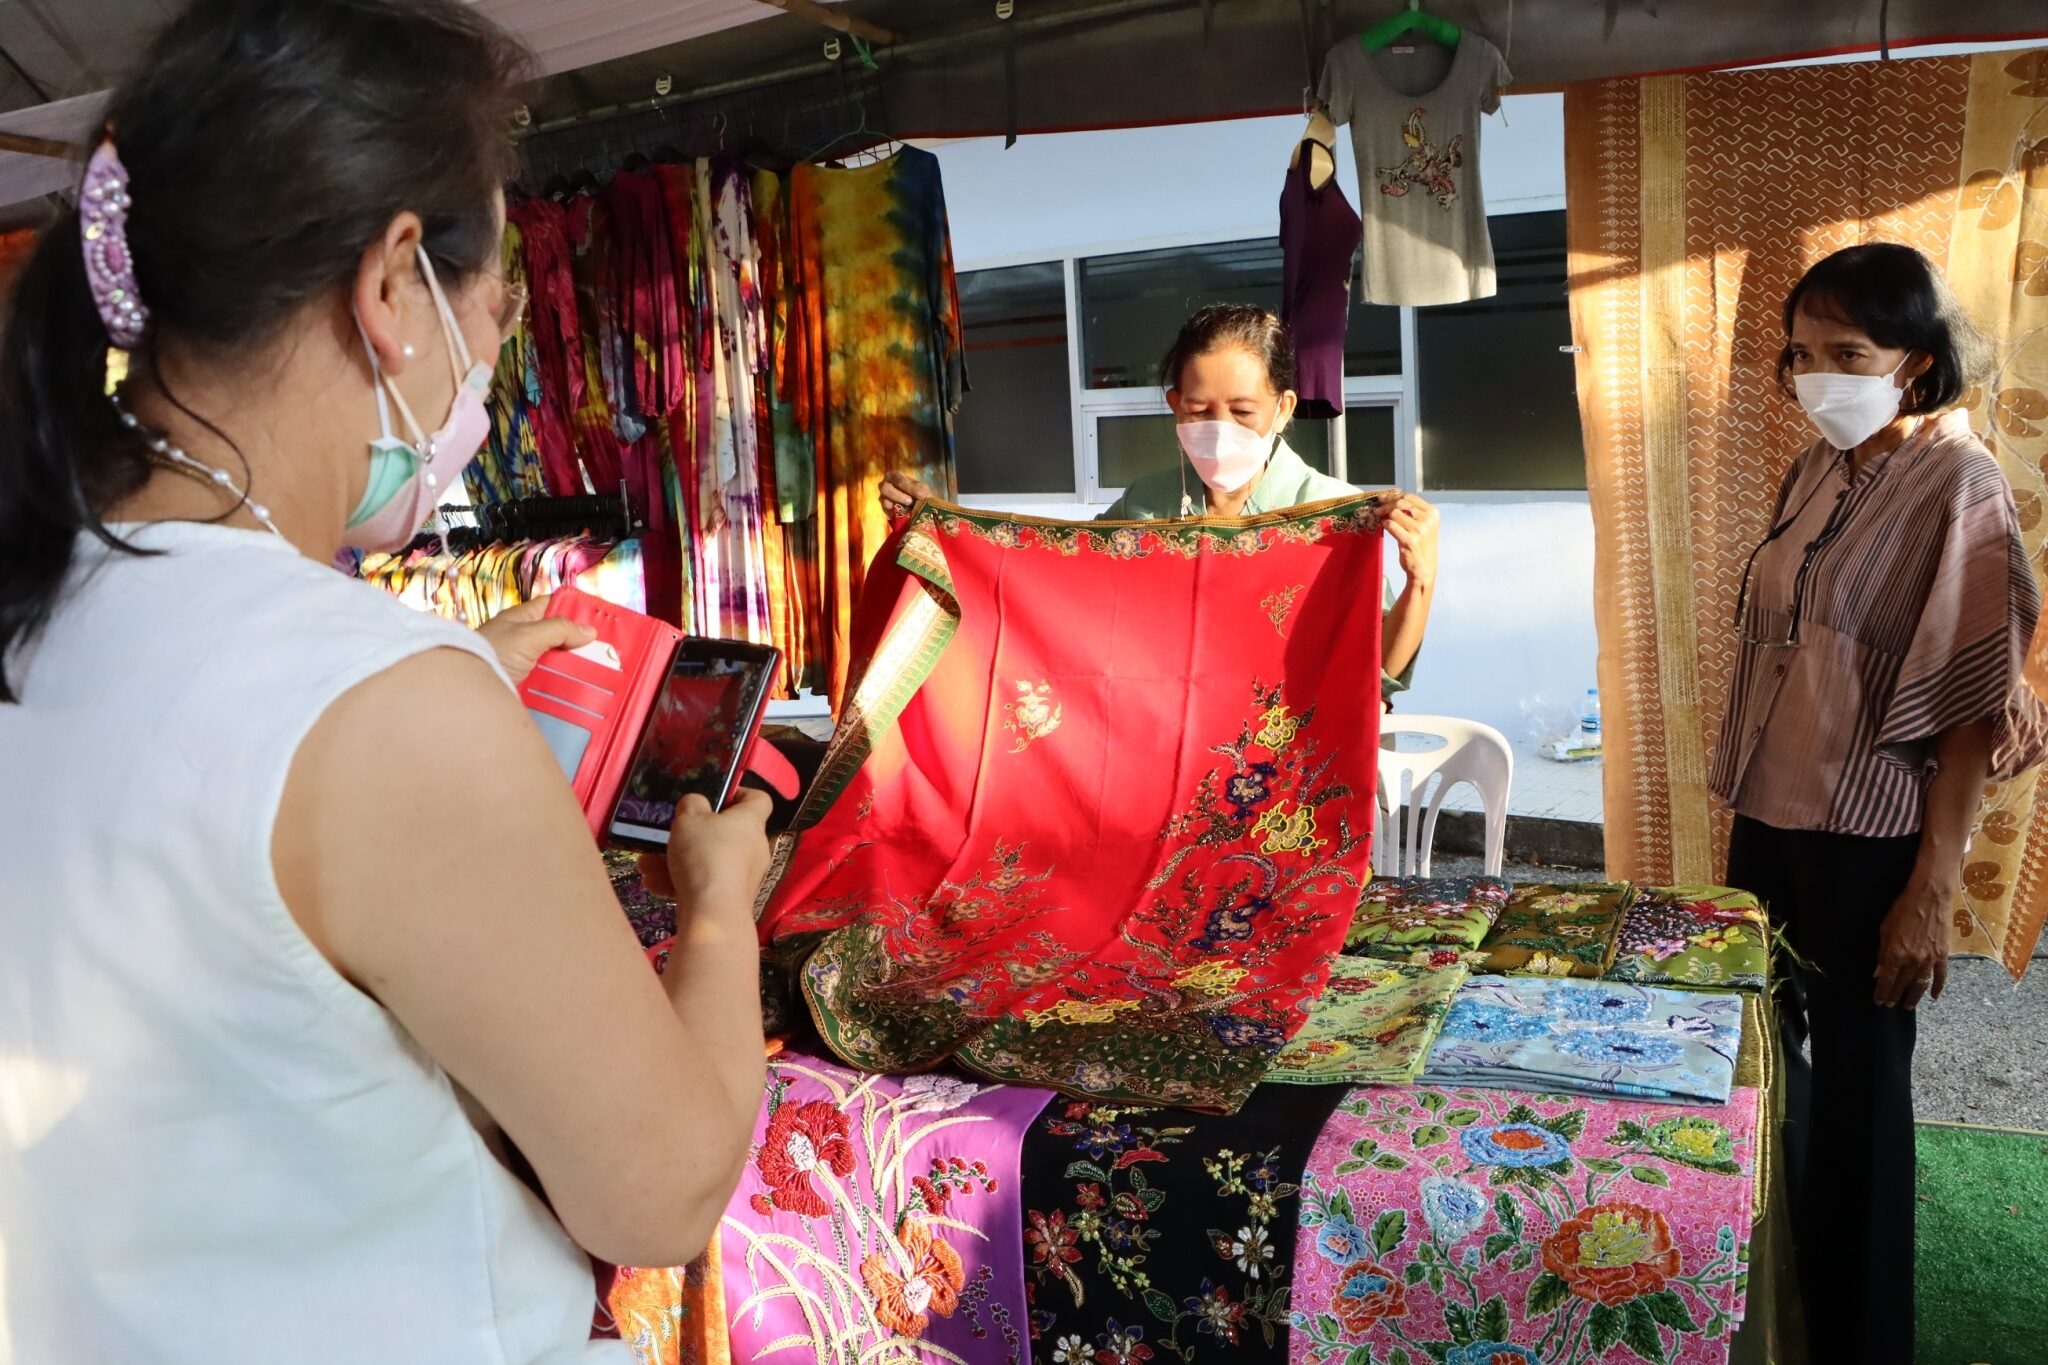 นครหาดใหญ่ จัดงานตลาดย้อนยุค ชมนิทรรศการผ้าไทย-หนังตะลุง-มโนราห์ 28 - 29มี.ค.นี้